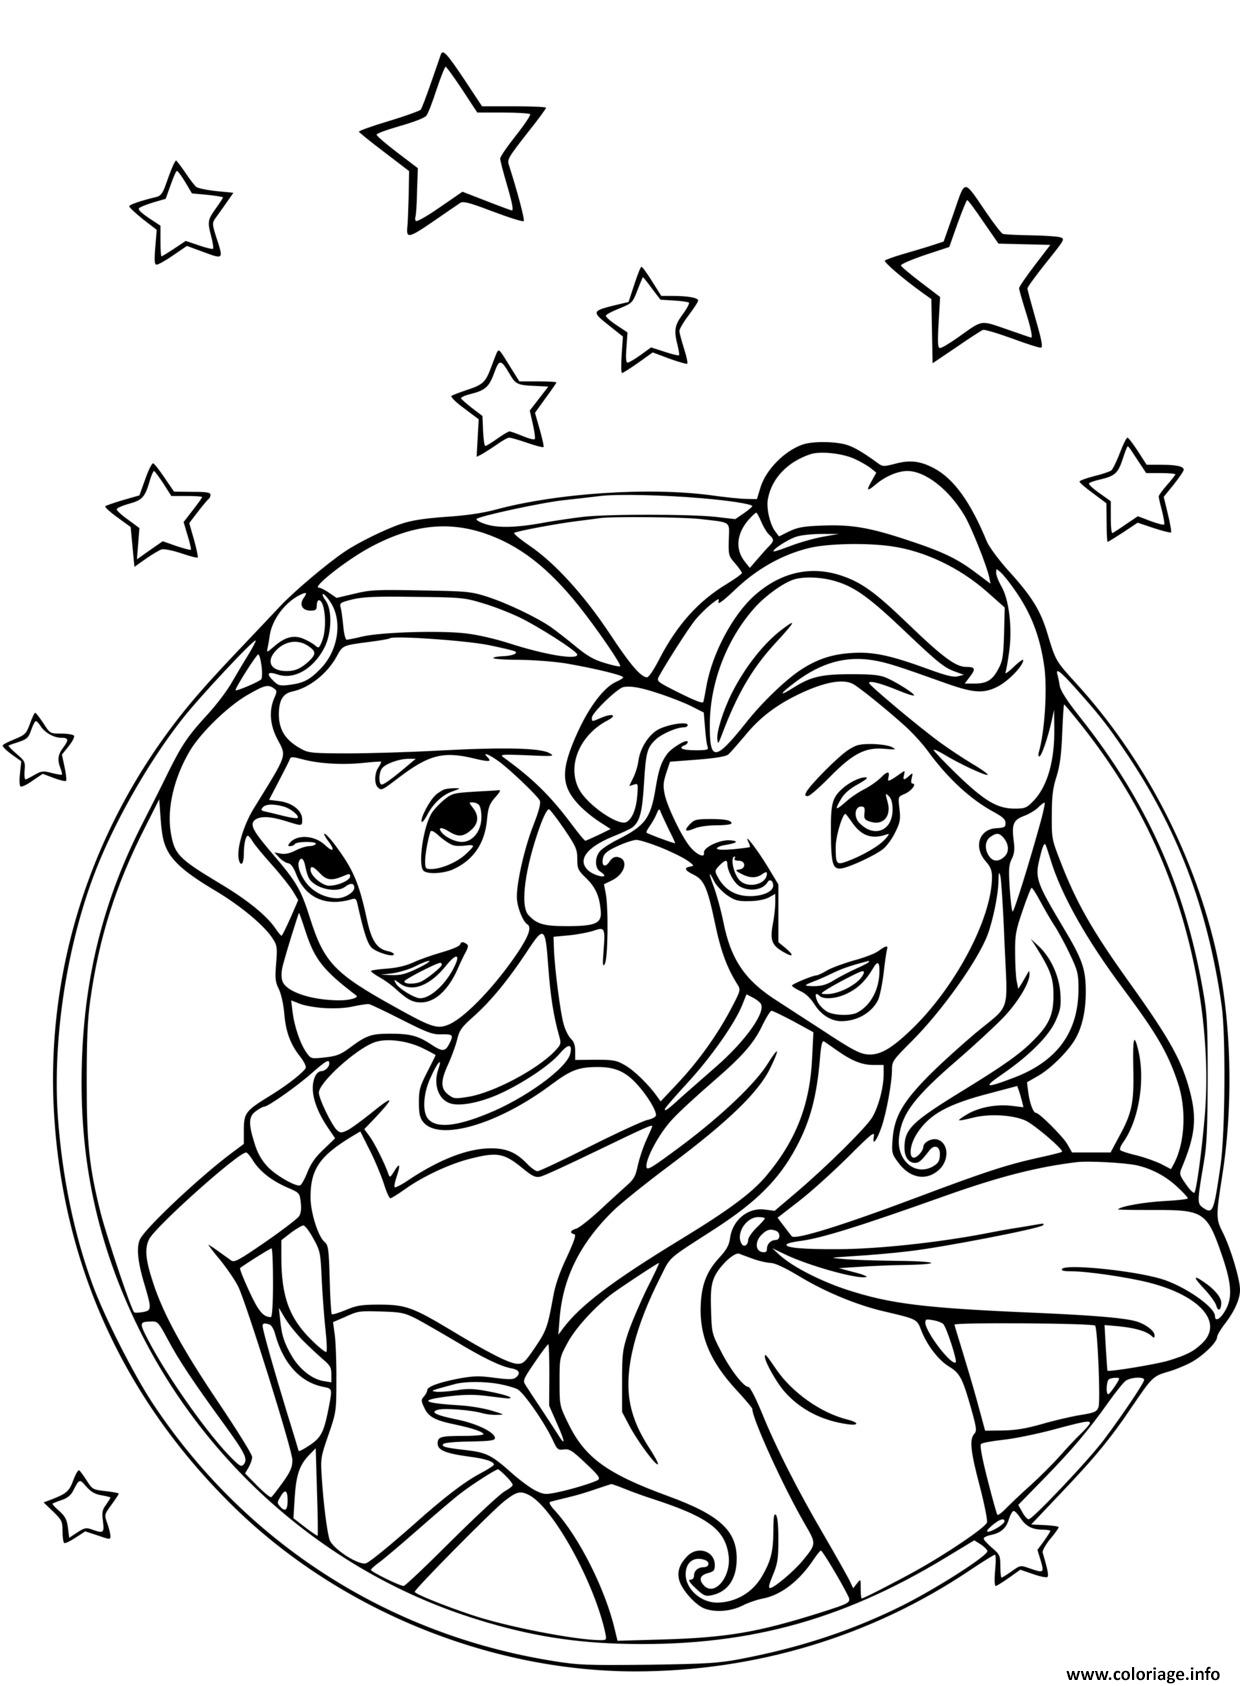 Coloriage Les Princesses Jasmine Dans Aladdin Et Belle Et La Bete intérieur Coloriage À Imprimer De Princesse